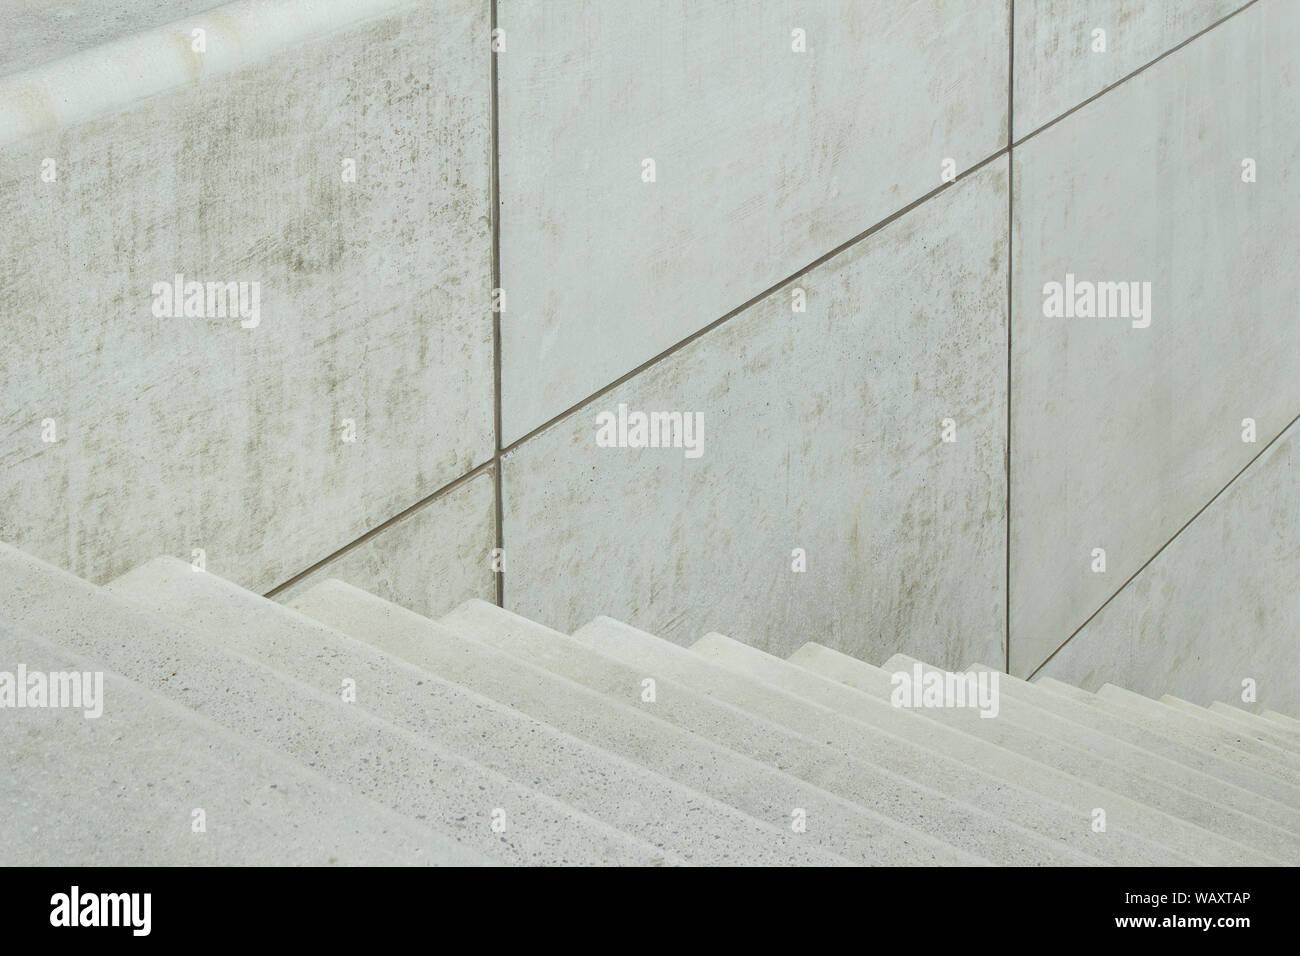 Nettoyer l'architecture en béton escaliers HafenCity hamburg mis de l'ordre moderne parfaitement Banque D'Images